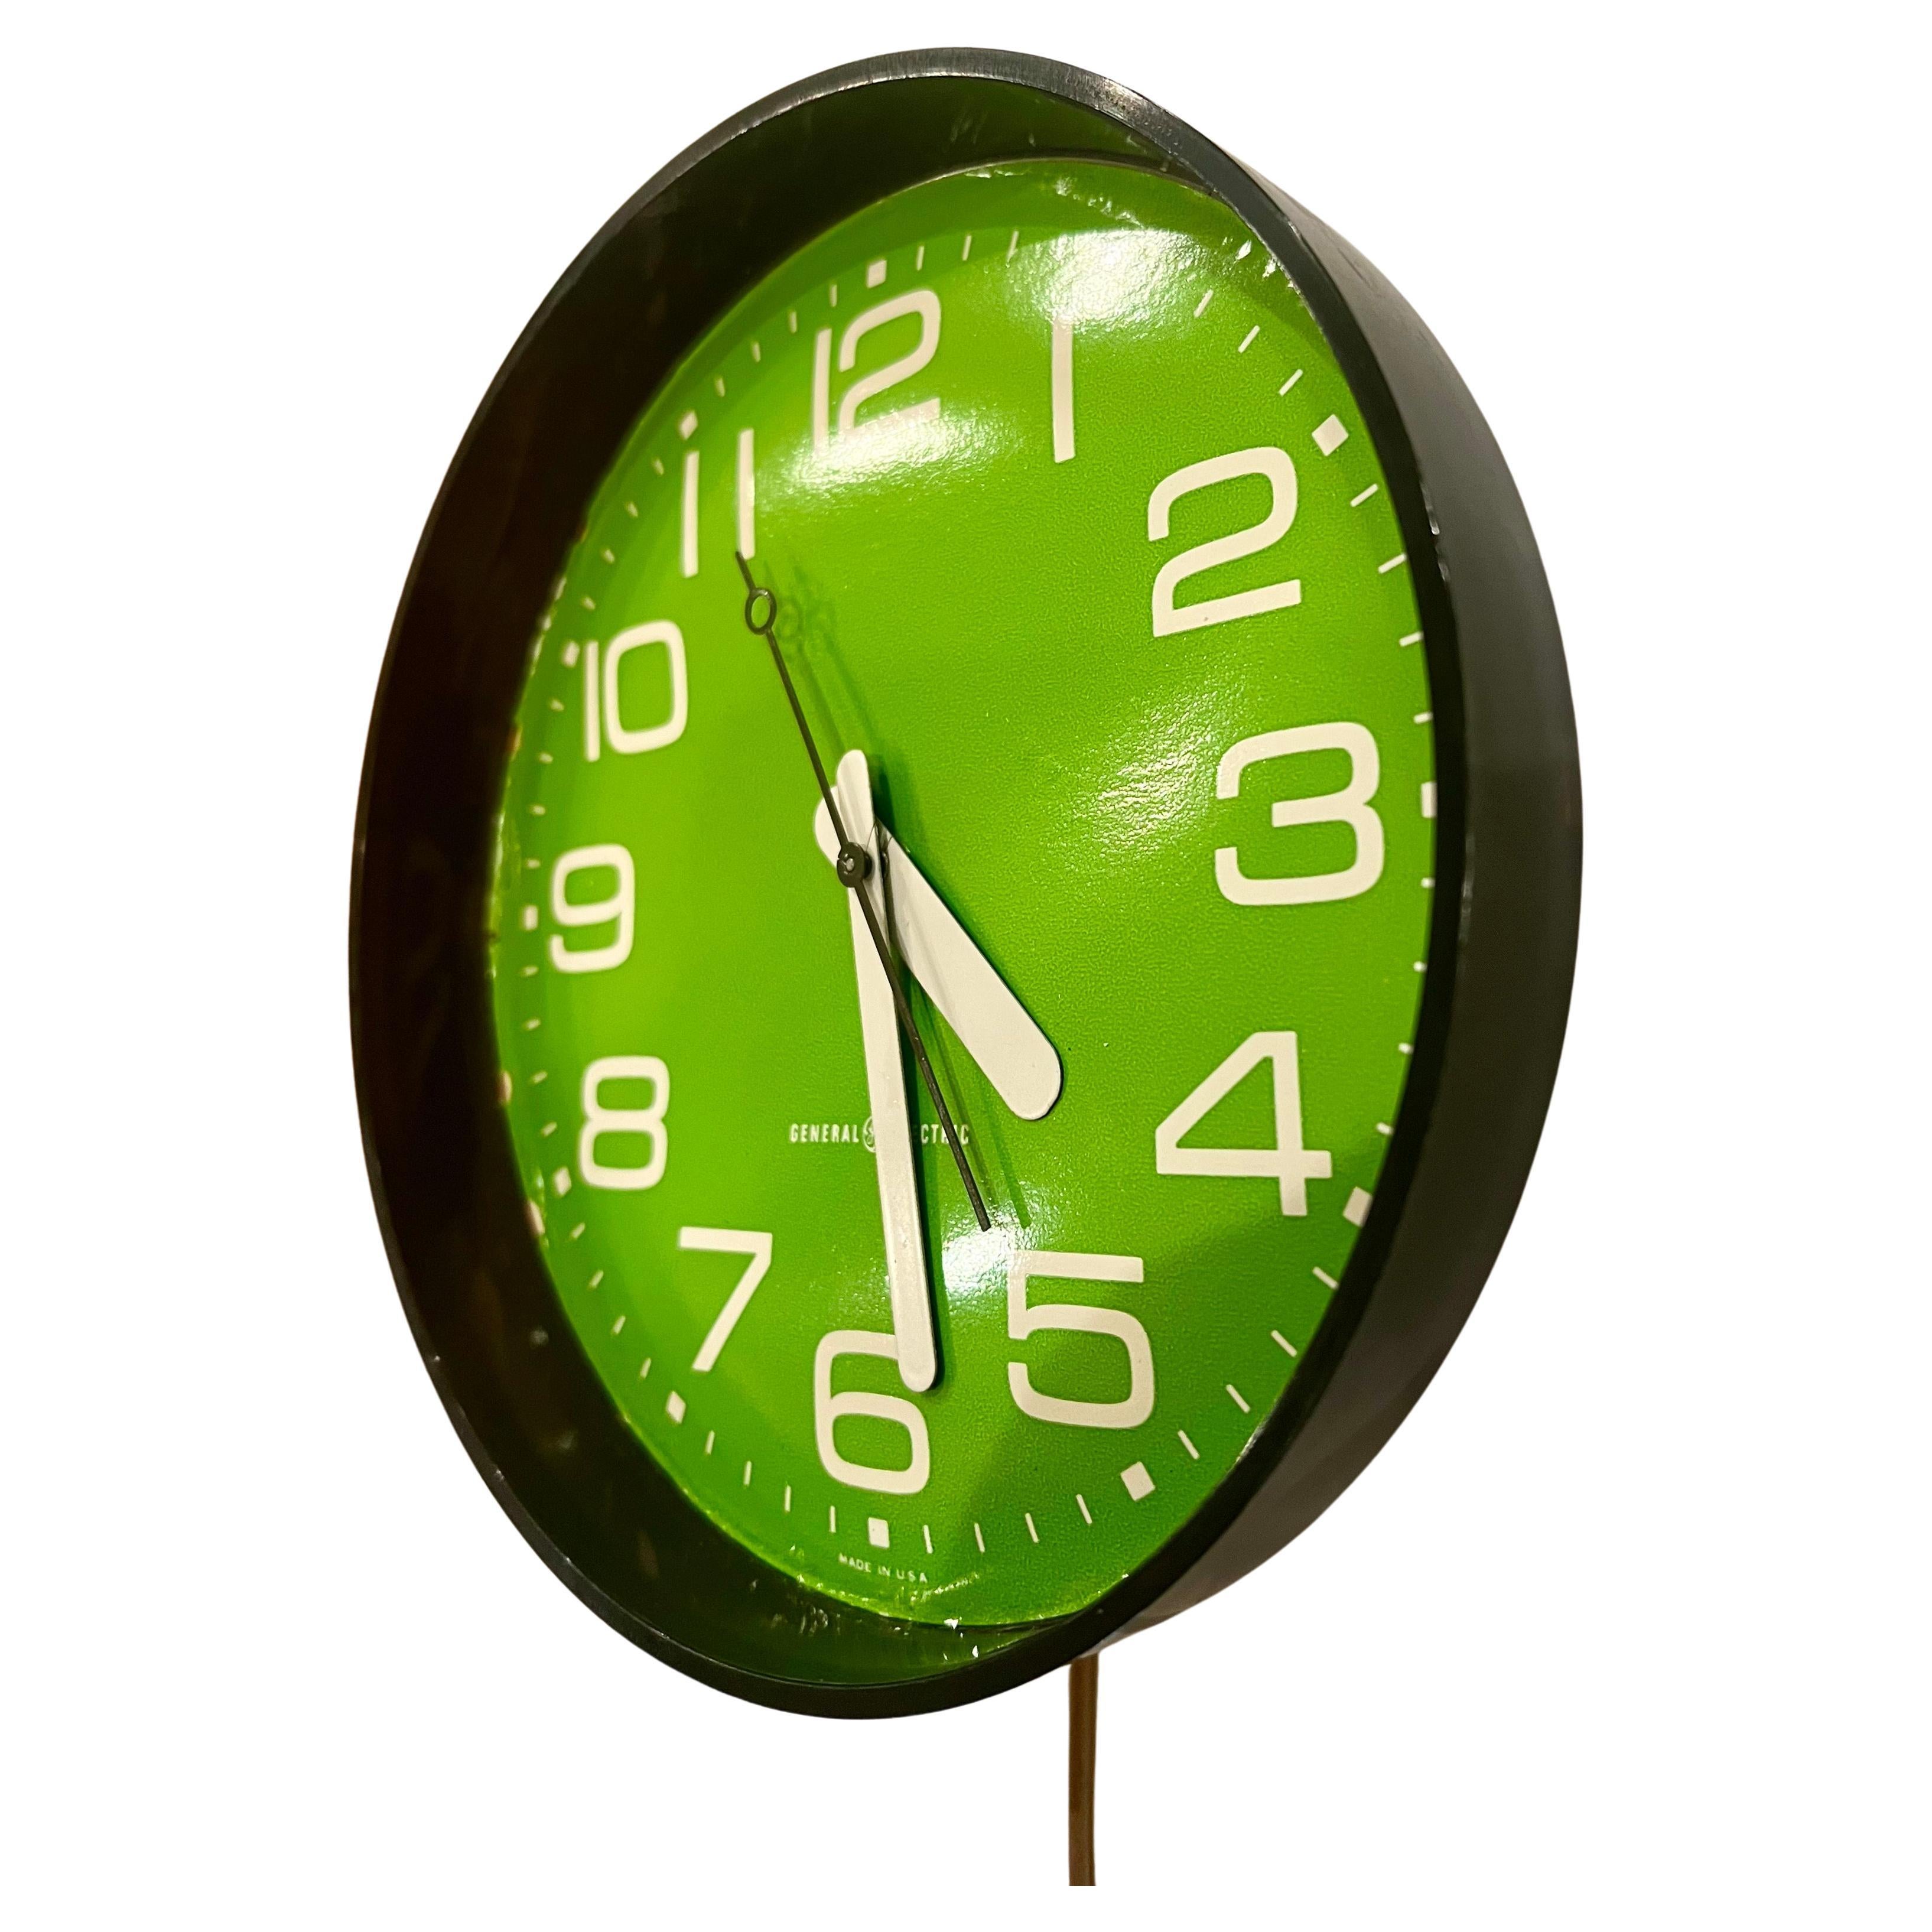 Une très cool belle couleur Lime green plastique boîtier avec mouvement électrique General Electric, horloge murale en état de marche cordon d'origine très belle simple design, et belle couleur. S'accorde parfaitement avec la décoration danoise